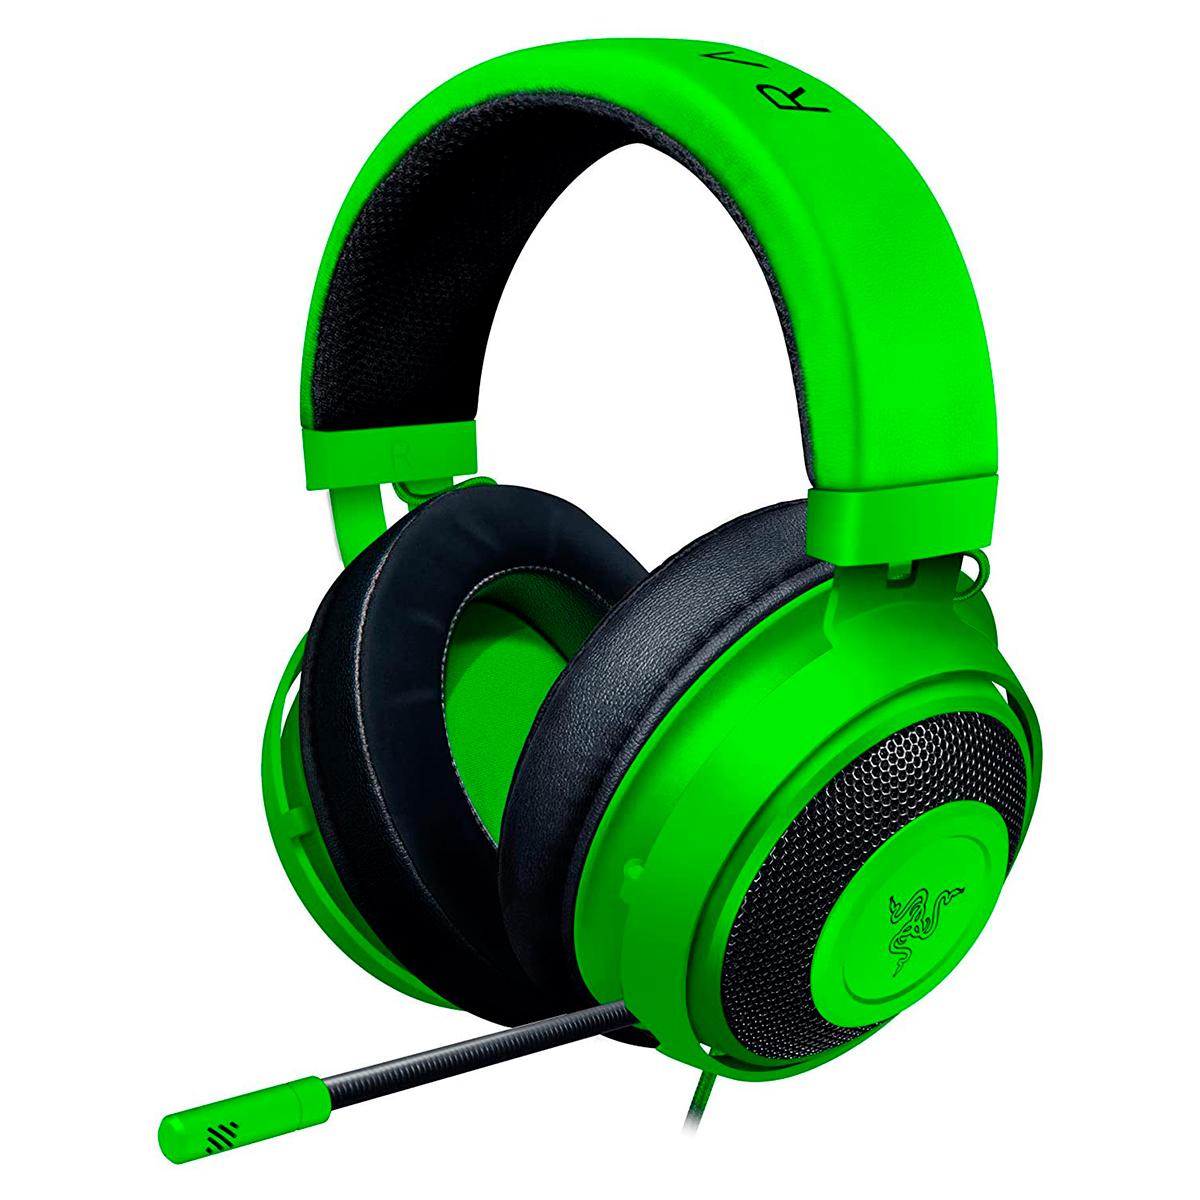 Audífonos Gamer Razer Kraken Green / Sonido envolvente 7.1 / 3.5 mm / Laptop / PC / PS4 / Xbox One / Verde con negro